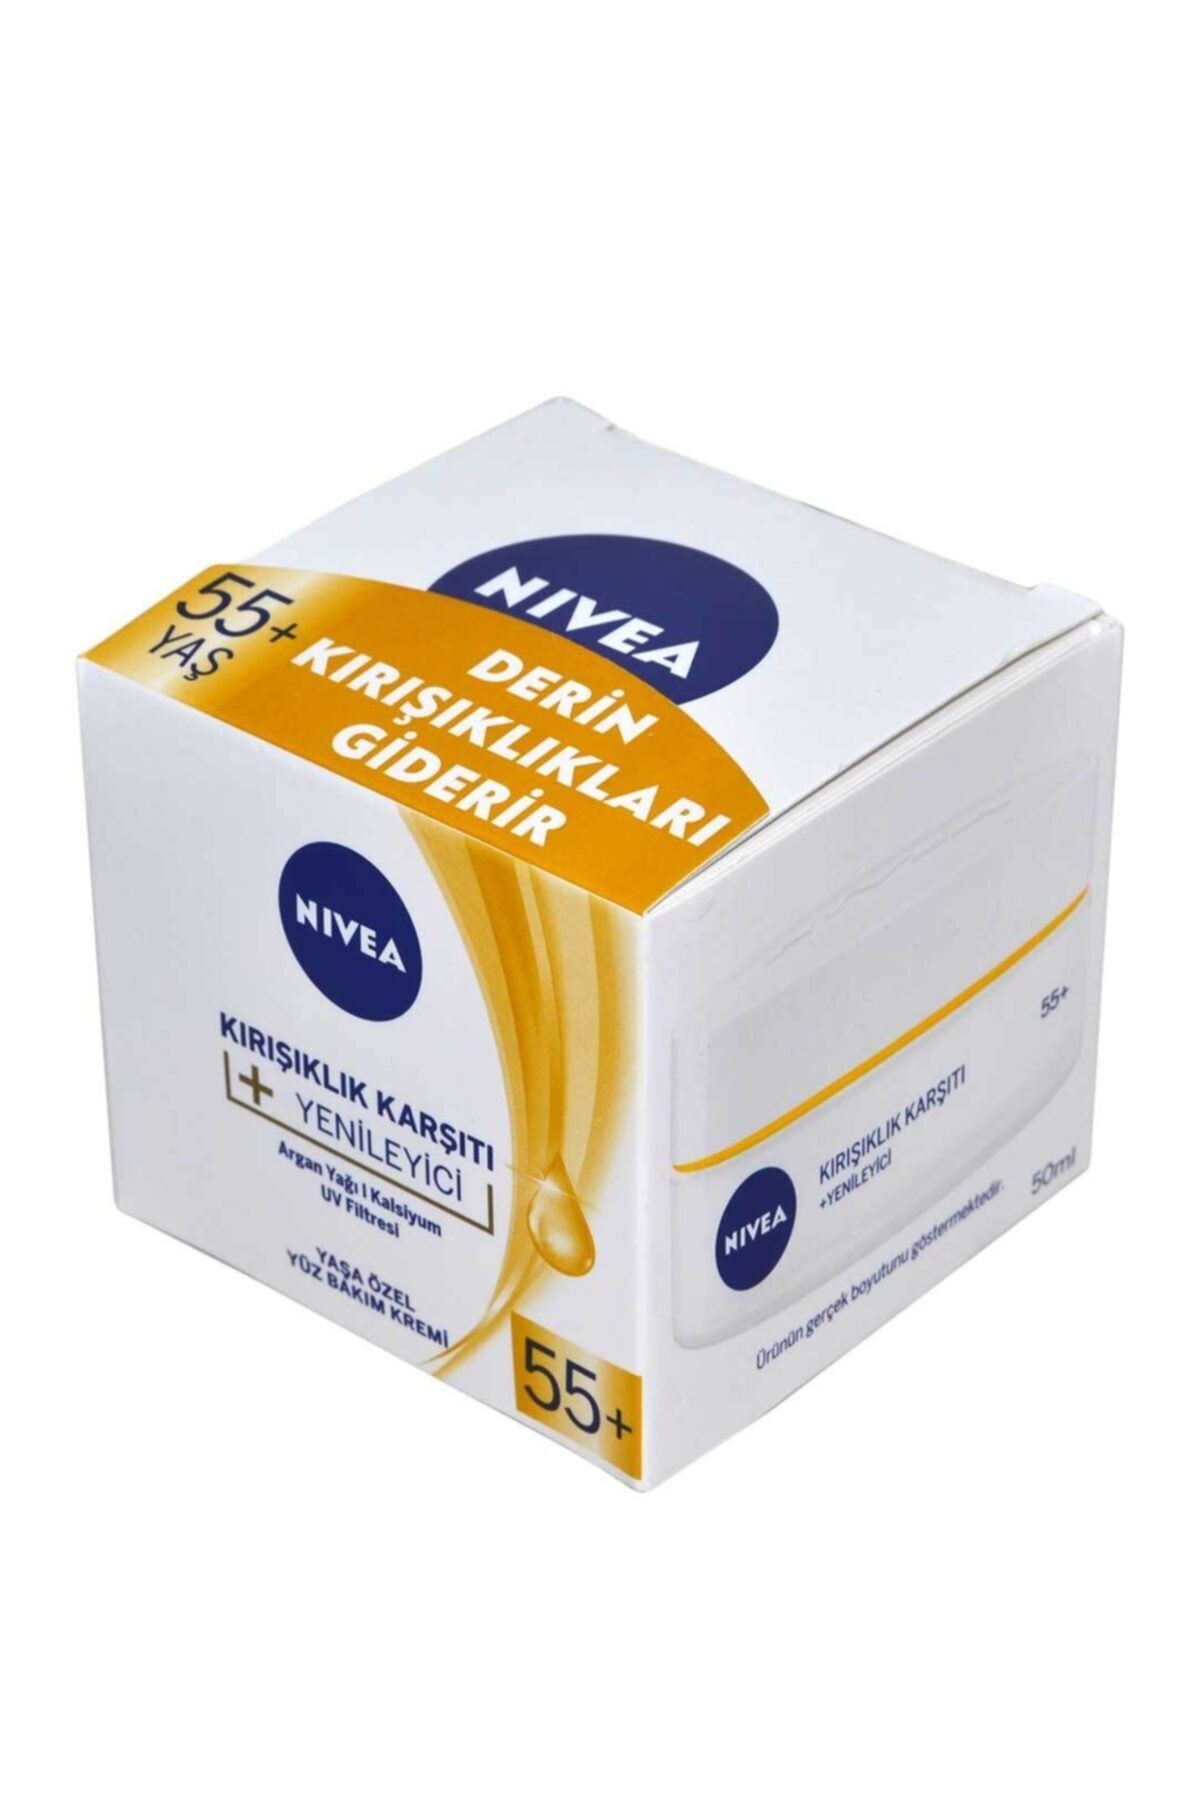 NIVEA Yüz Bakım Kremi 50 ml Kırışıklık Karşıtı Yenileyici 55 Yaş